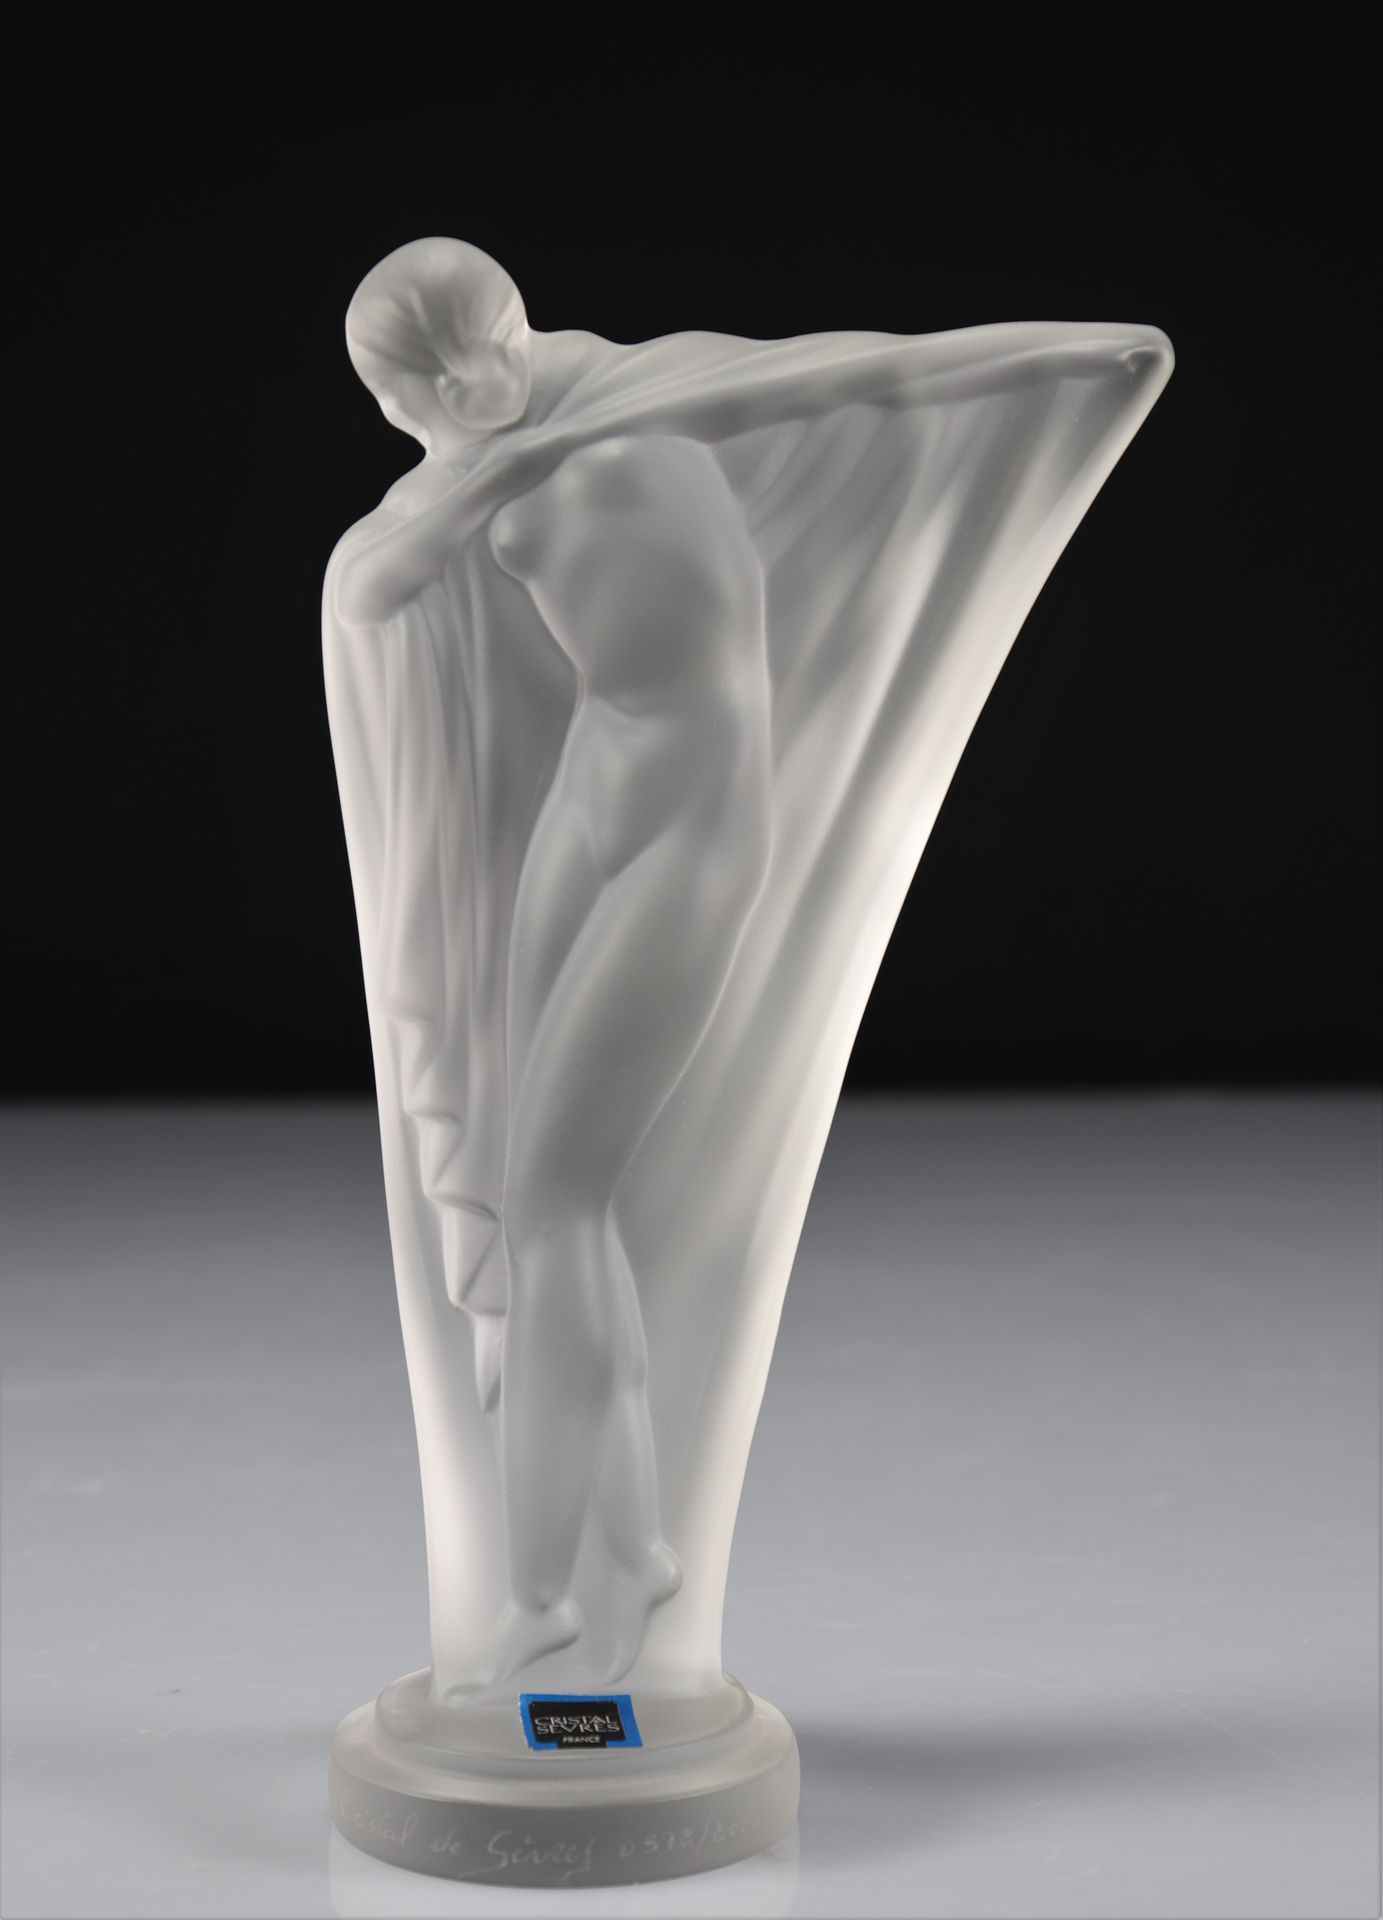 Statuette cristal de Sèvre 塞弗尔的水晶雕像
重量: 840克
地区: 法国
尺寸: 高210升120
作者/艺术家: 塞弗尔
状态:&hellip;